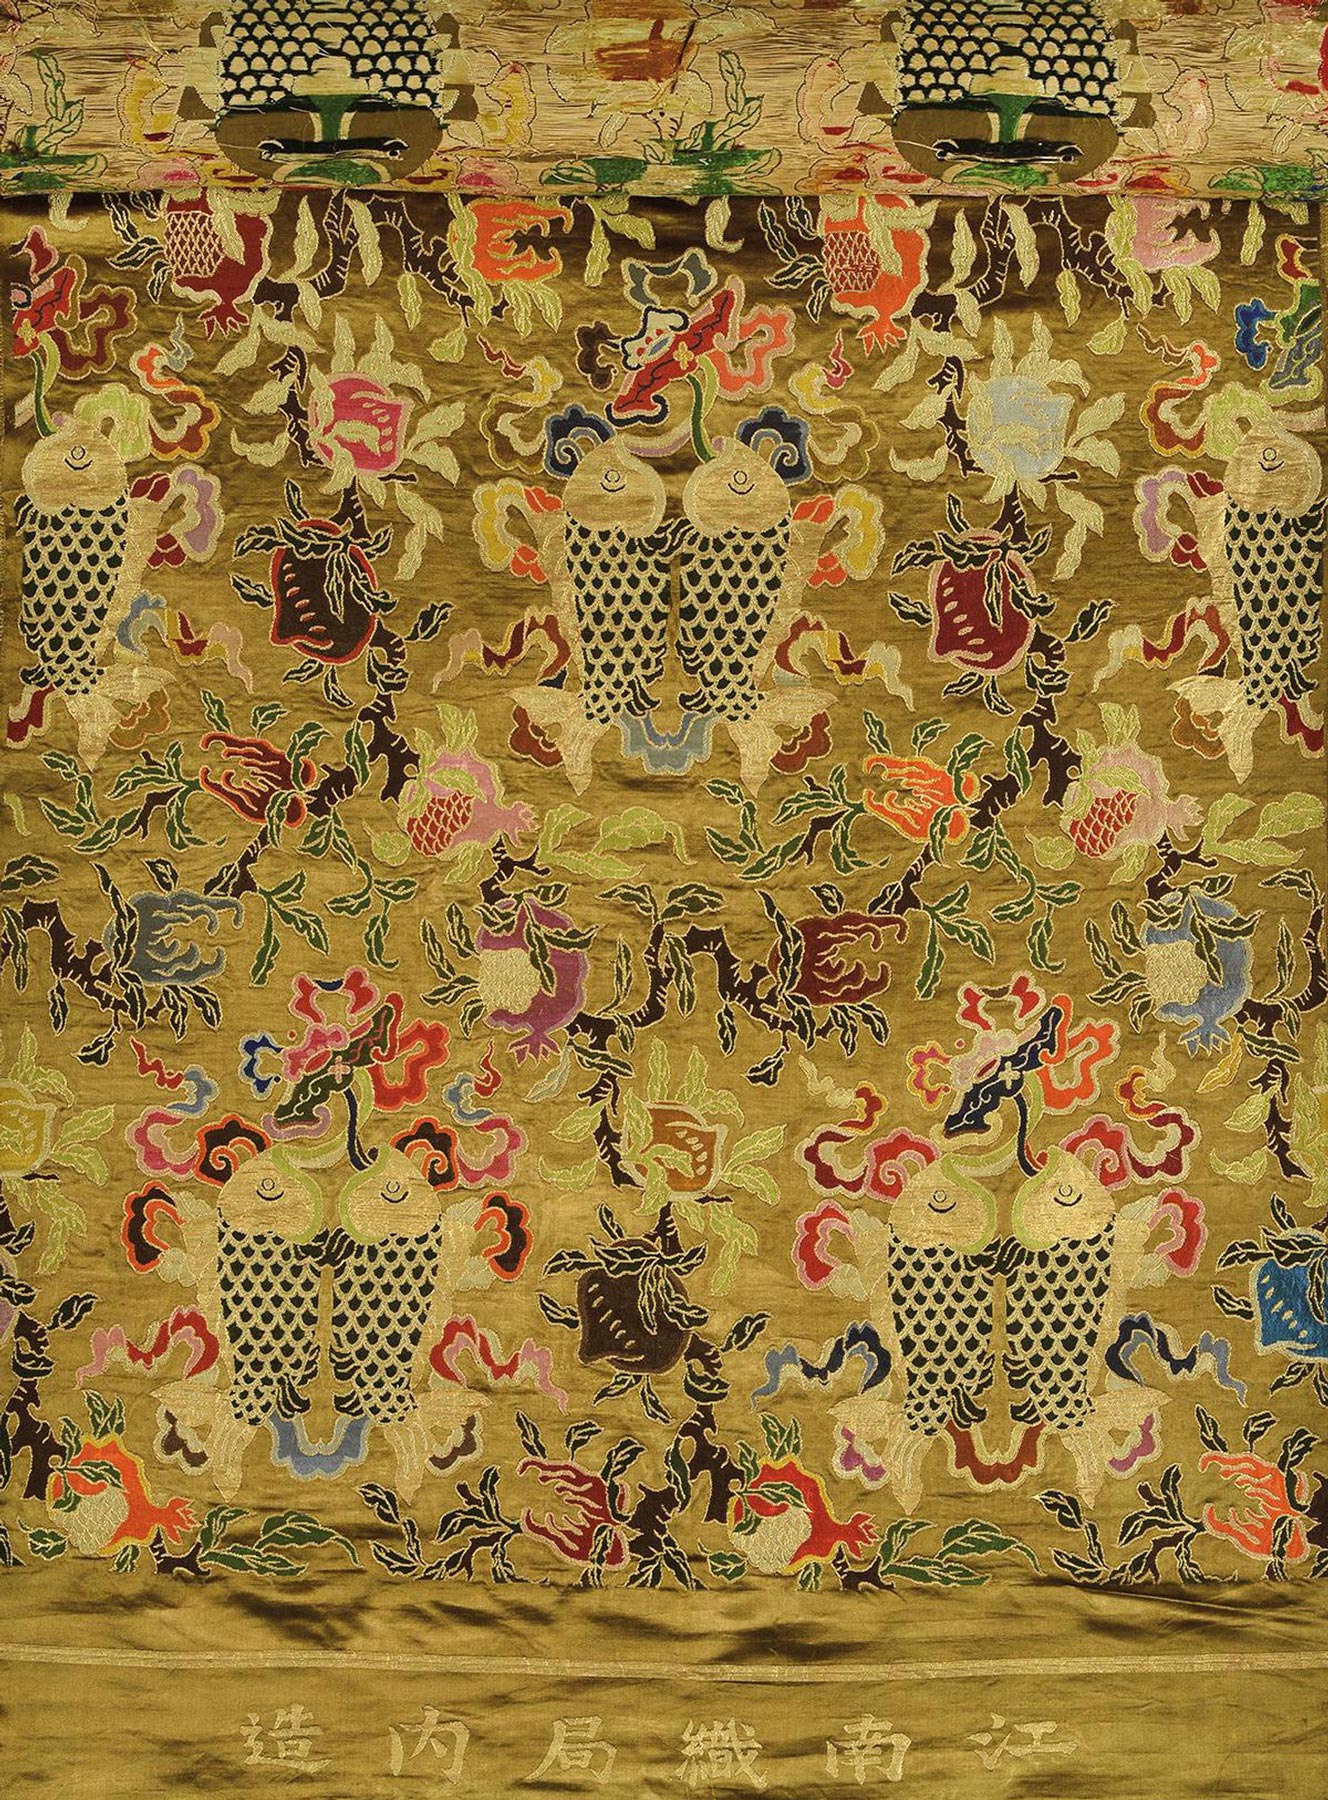 中国古代织绣